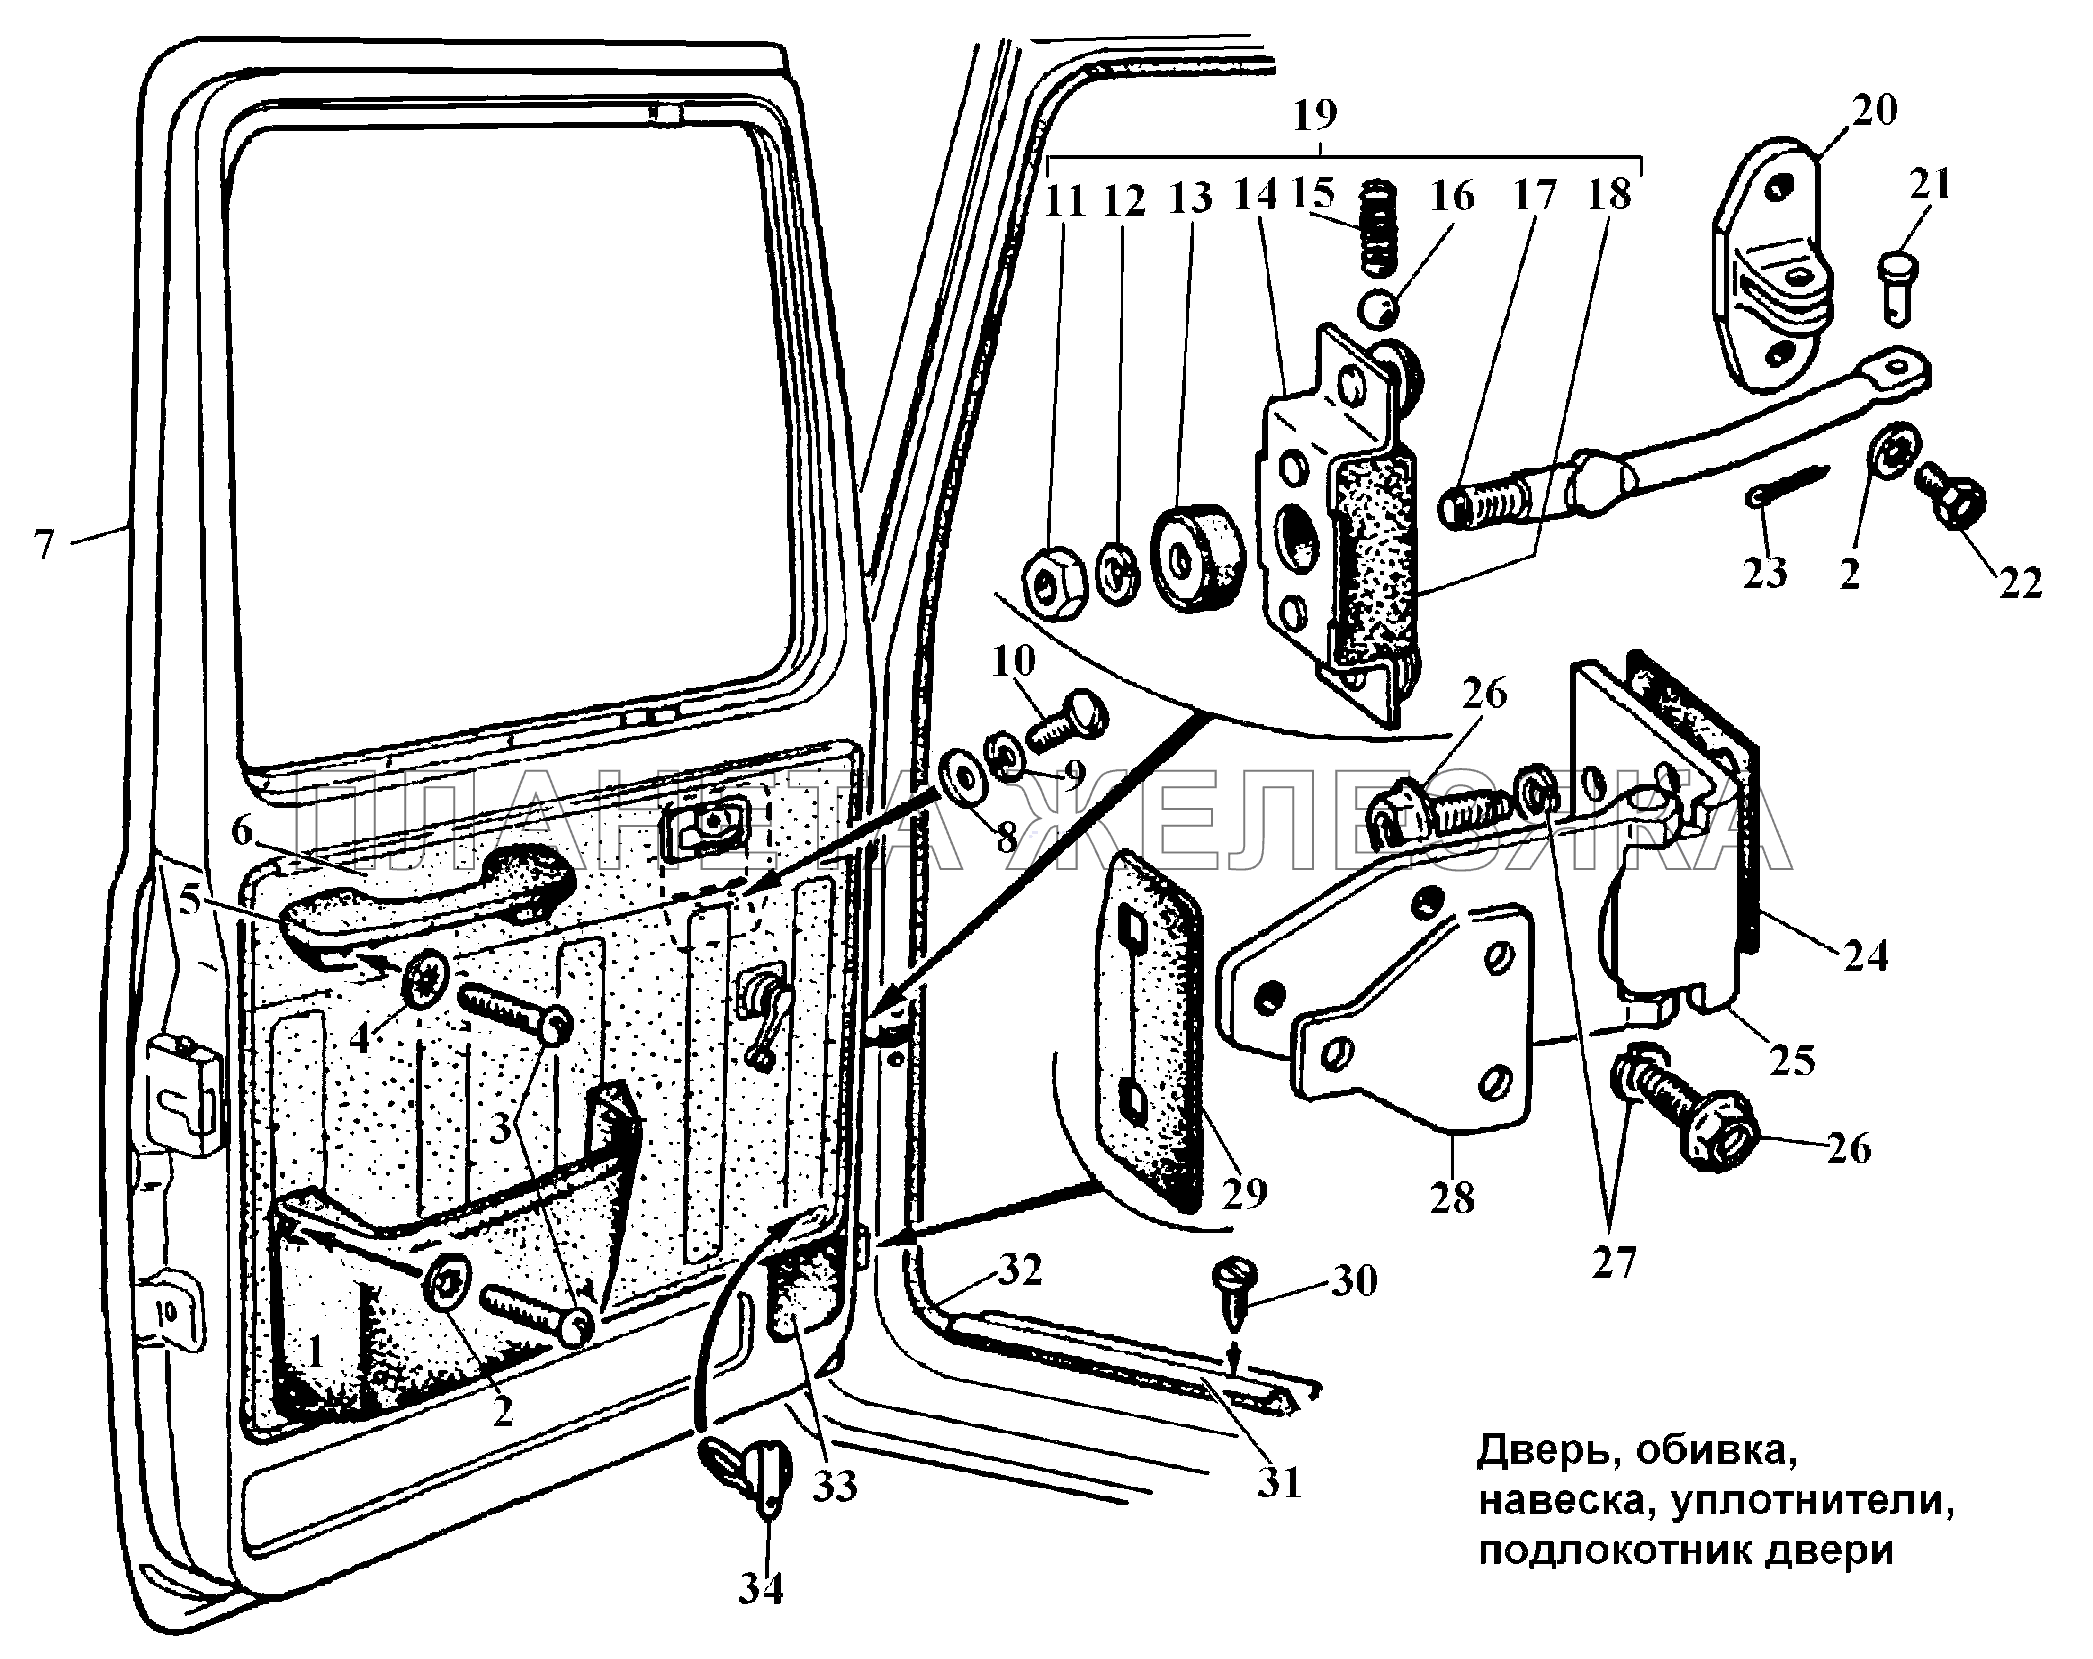 Двери, обтвка, навеска, уплотнители, подлокотники ГАЗ-3308